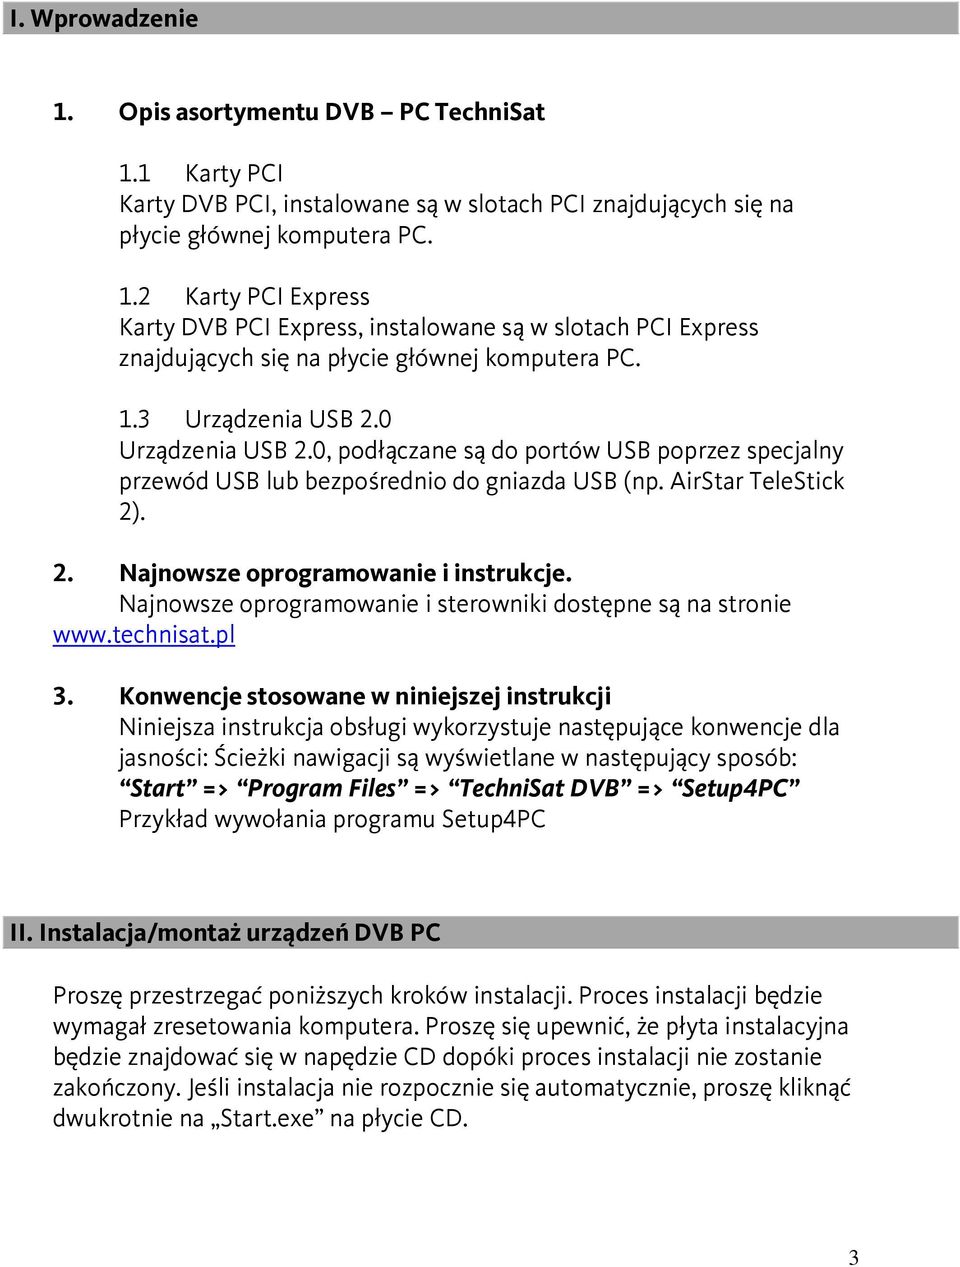 Najnowsze oprogramowanie i sterowniki dostępne są na stronie www.technisat.pl 3.